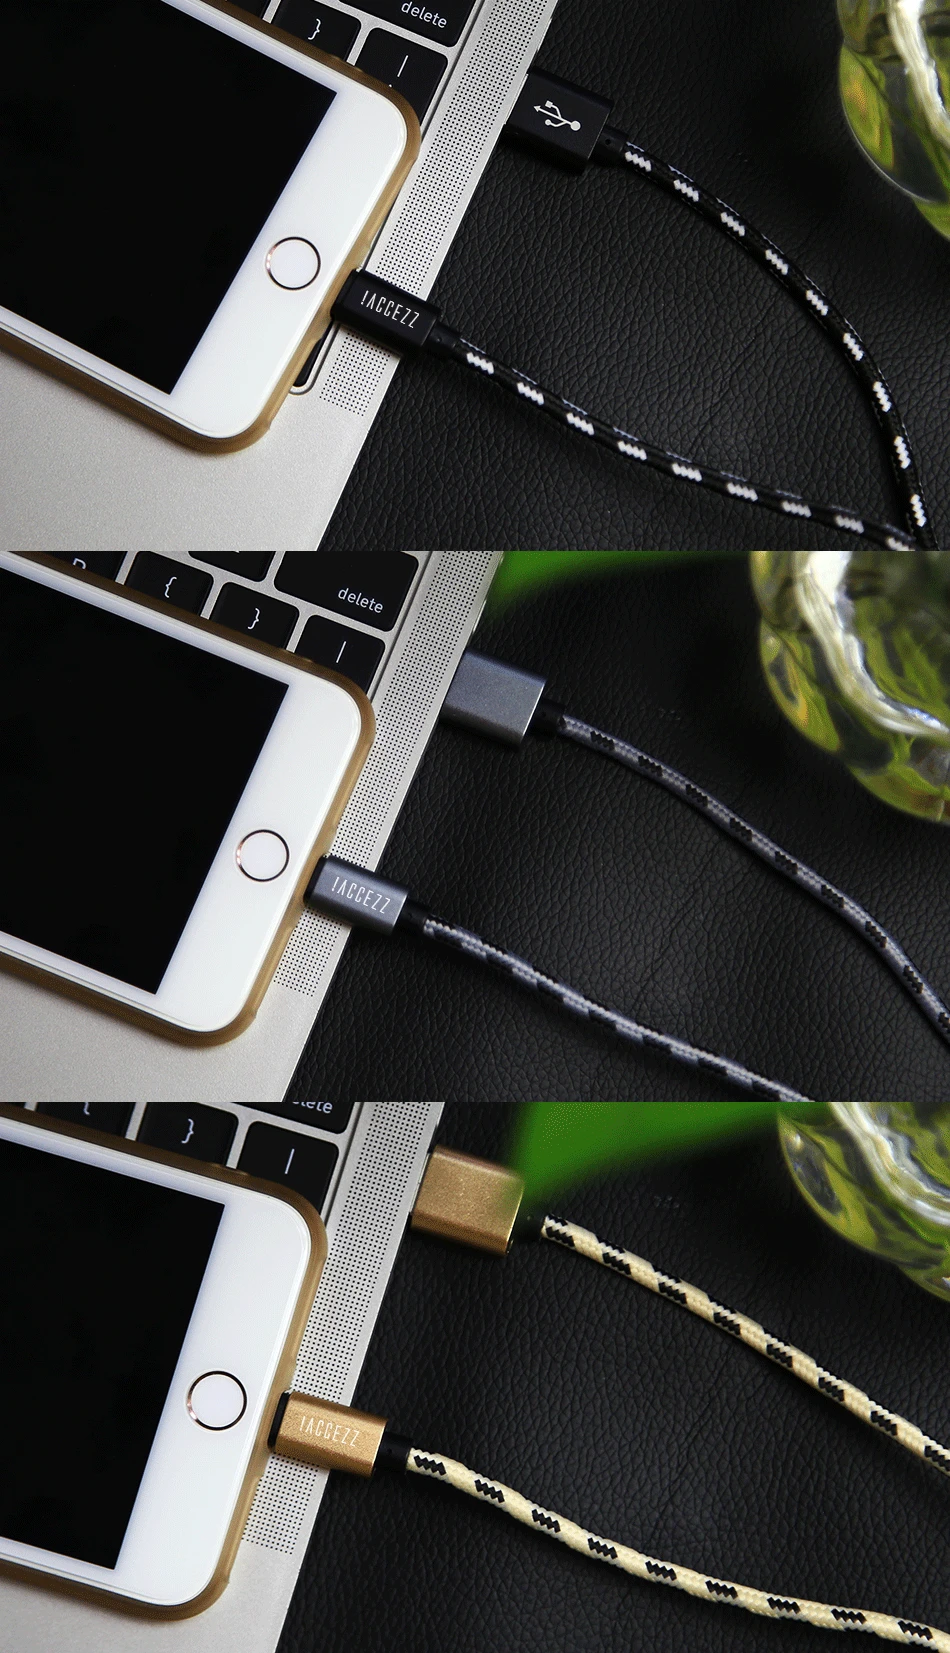 ACCEZZ 2.4A кабель для Apple iPhone 5 6 7 8 Plus X XS MAX XR iPad планшет зарядный шнур Мобильный телефон данных освещение кабели зарядного устройства